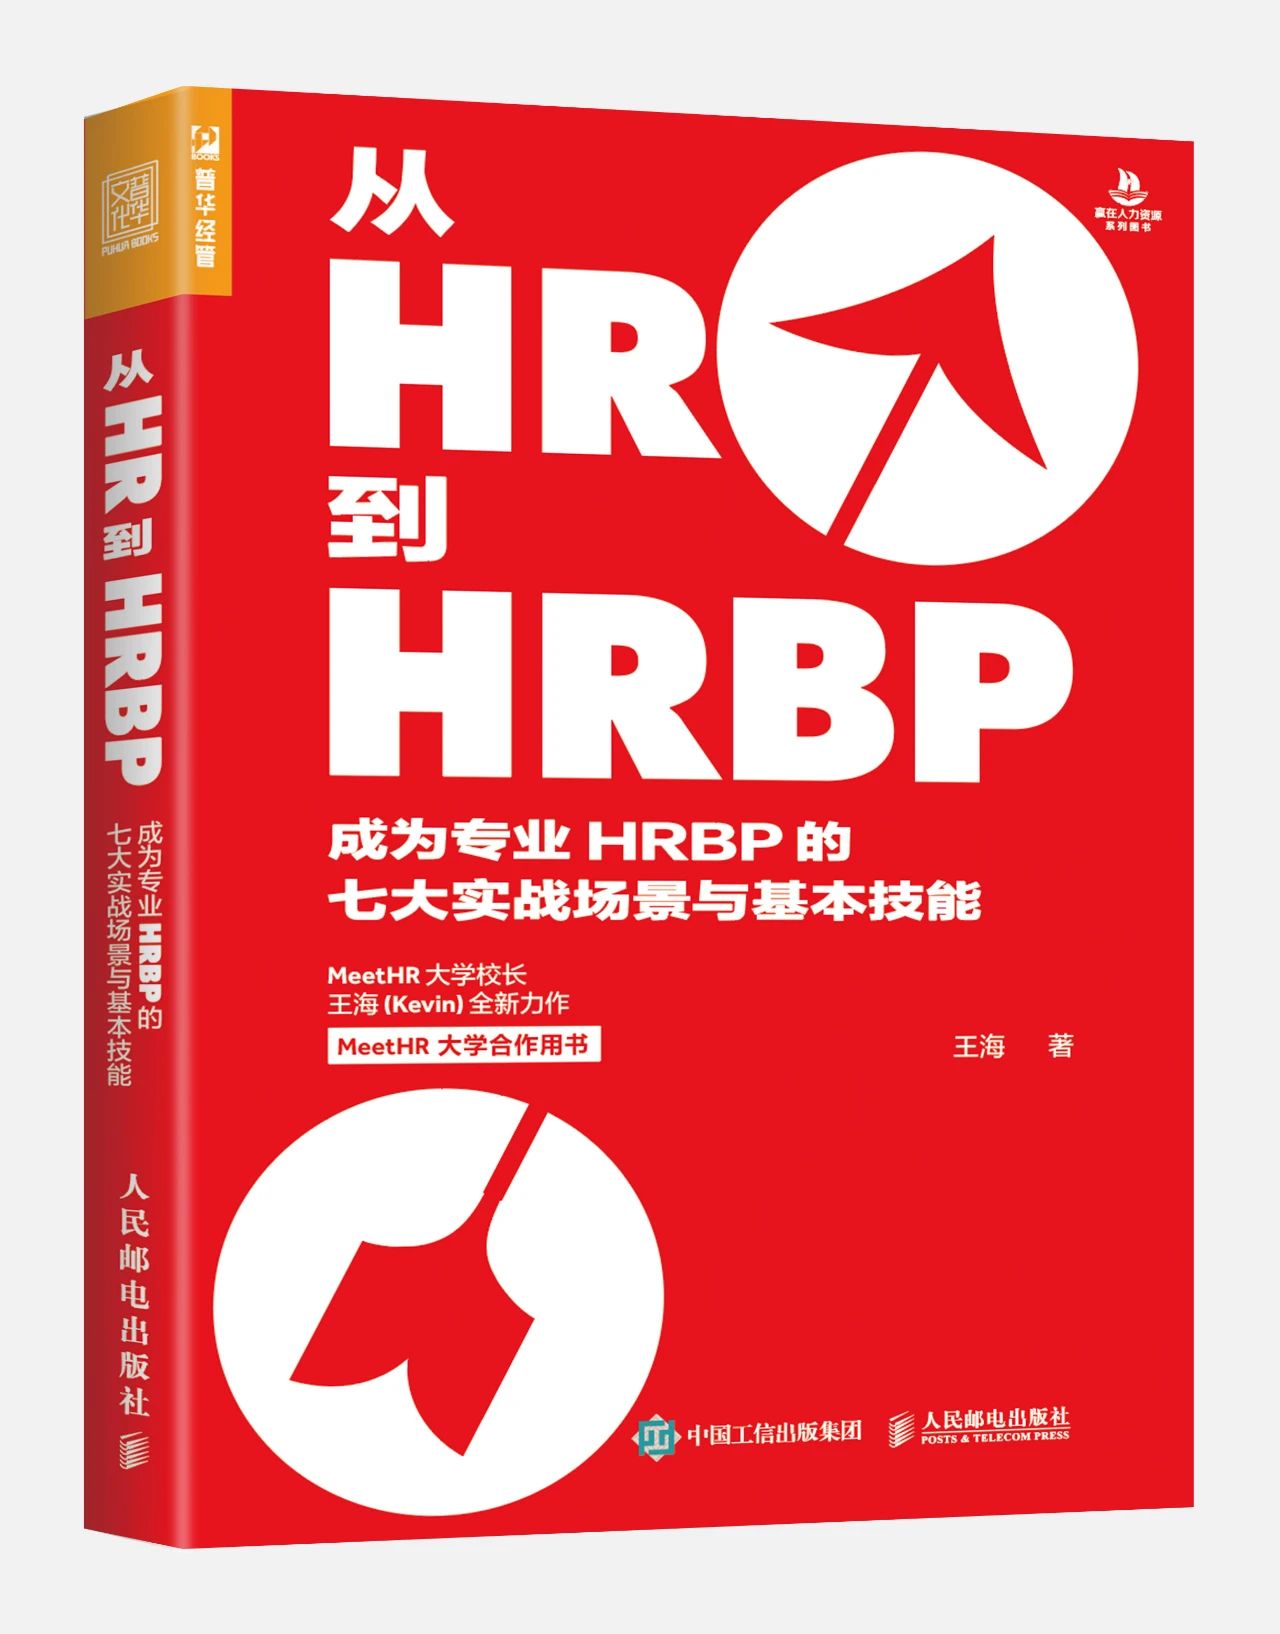 强烈推荐，HRBP必读的8本书！